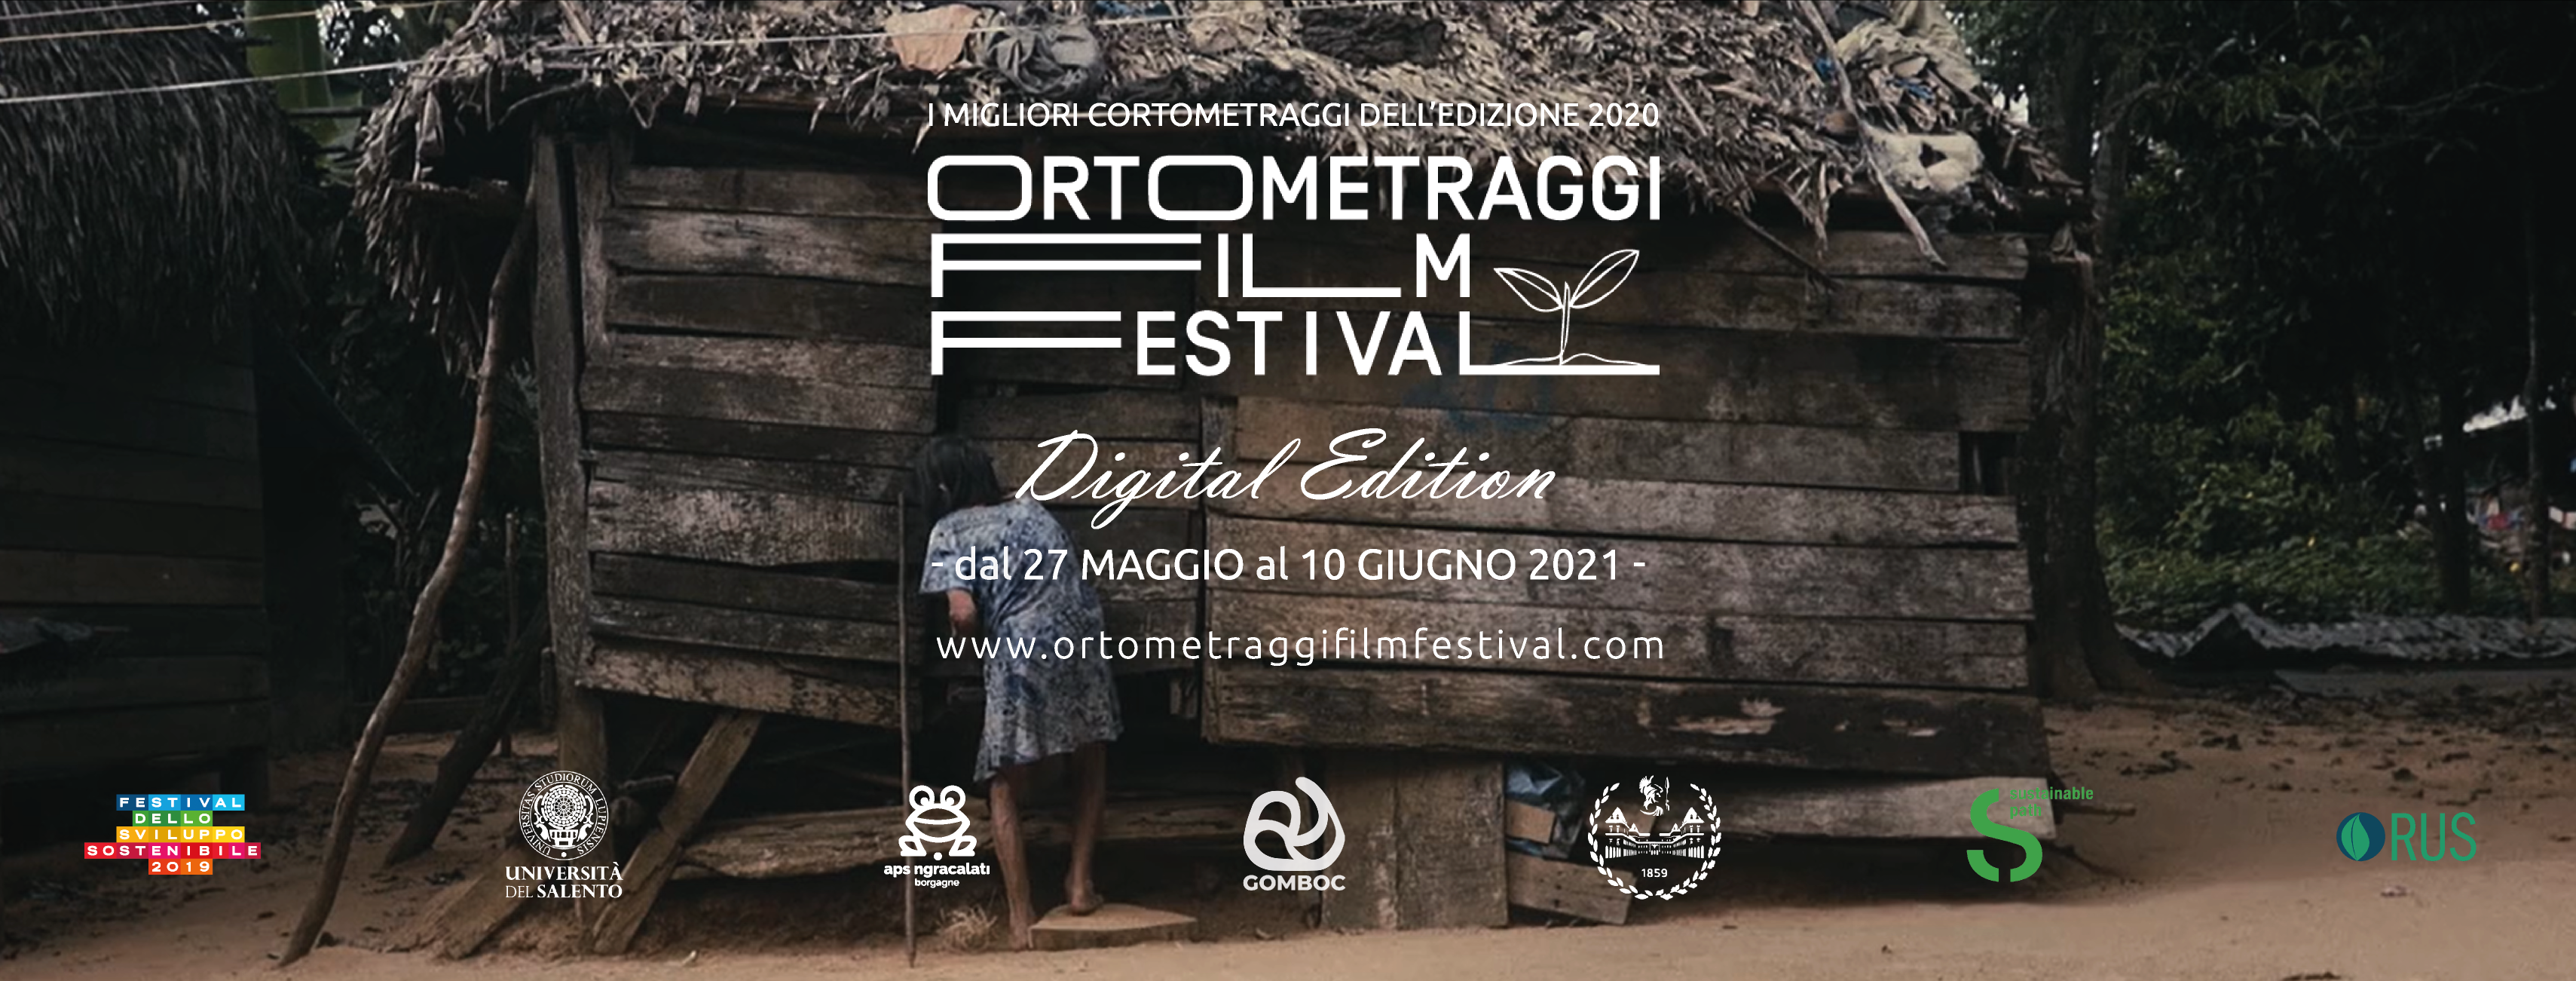 Ortometraggi Film Festival da oggi fino al 10 giugno… online